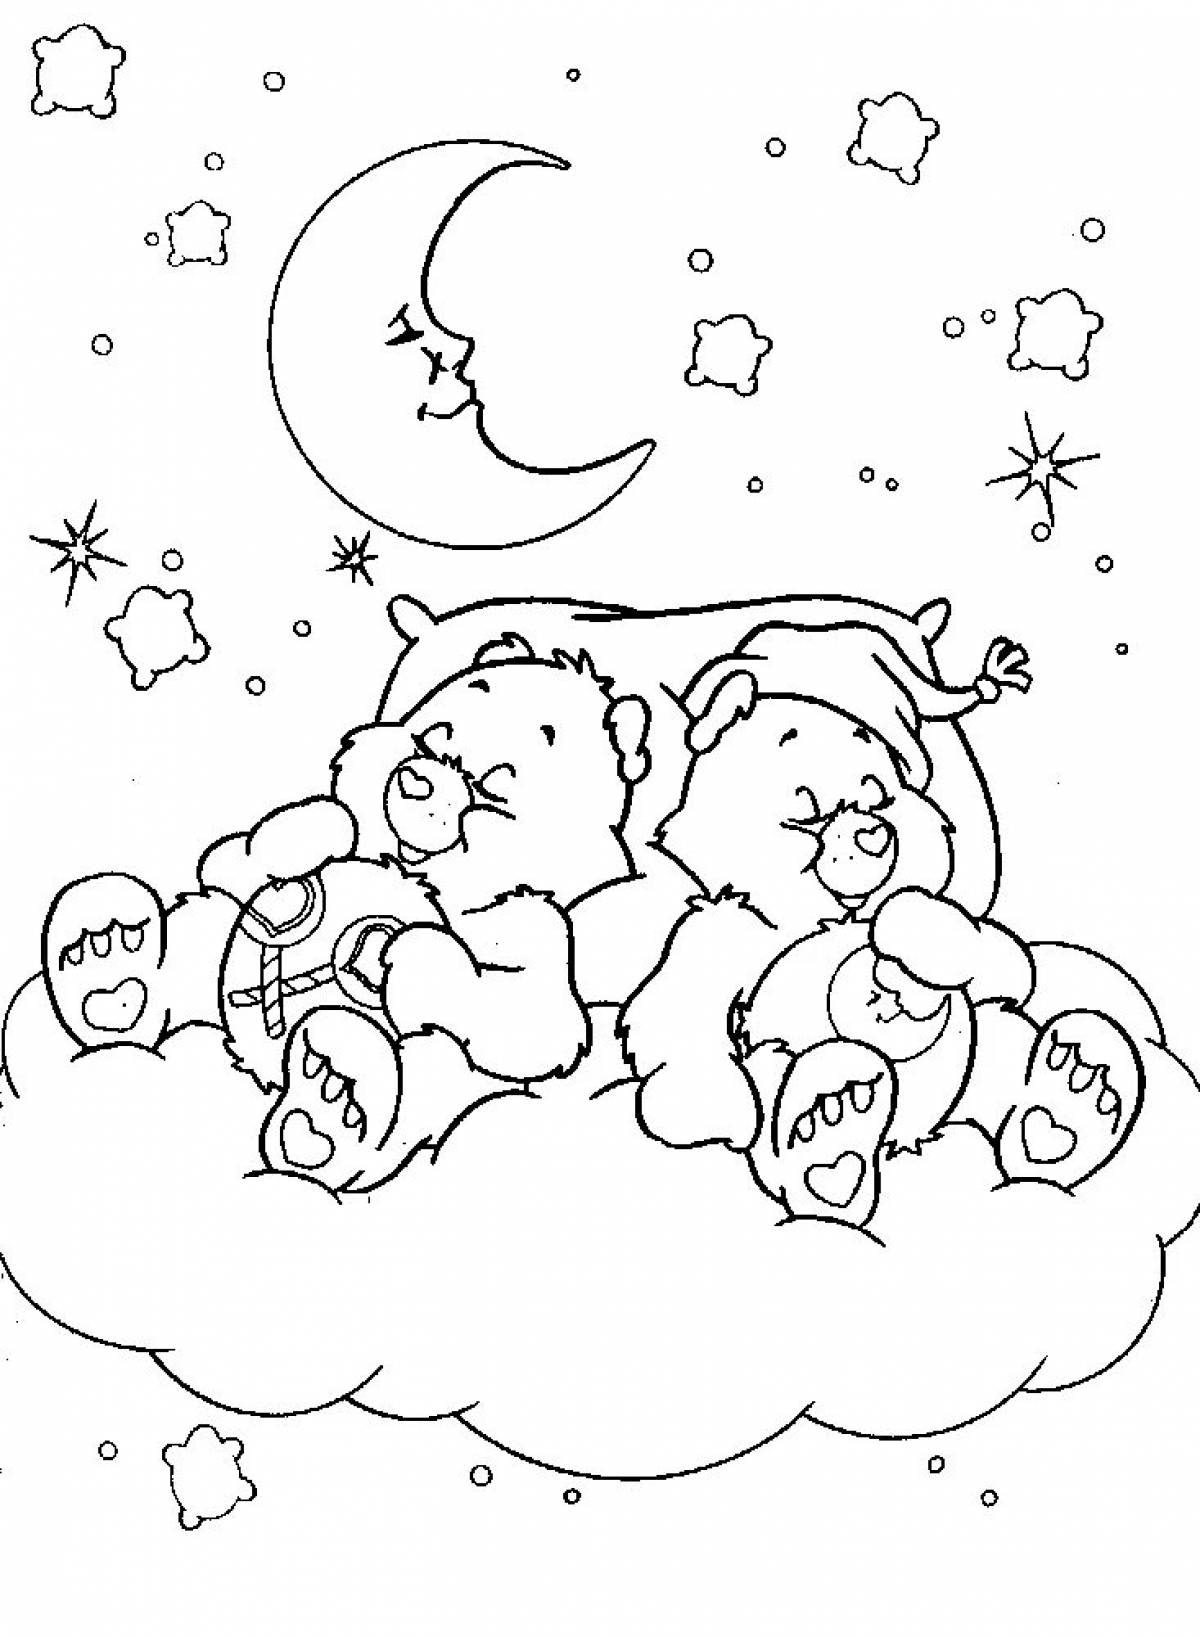 Coloring book sleepy teddy bear sleeping